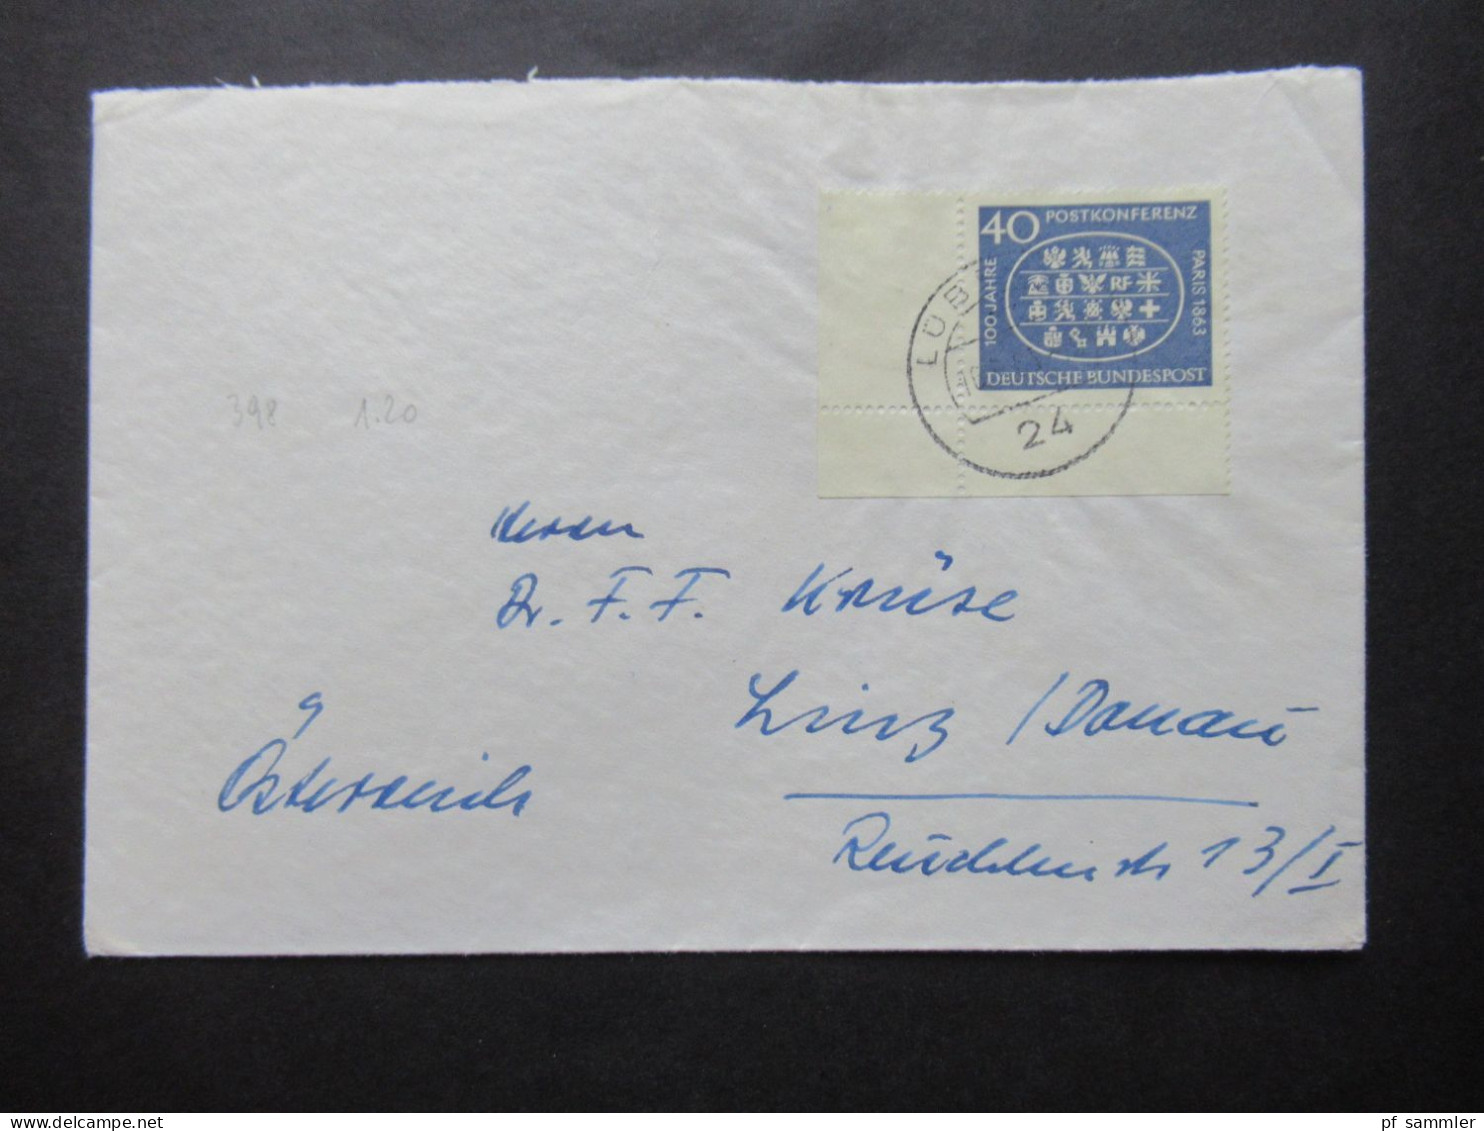 BRD / Berlin 1956 - 1960er Belegeposten 32 Stk. Nur EF / MeF Mit Randstücken / Eckränder! Auslandsbriefe Nach Österreich - Lots & Kiloware (mixtures) - Max. 999 Stamps